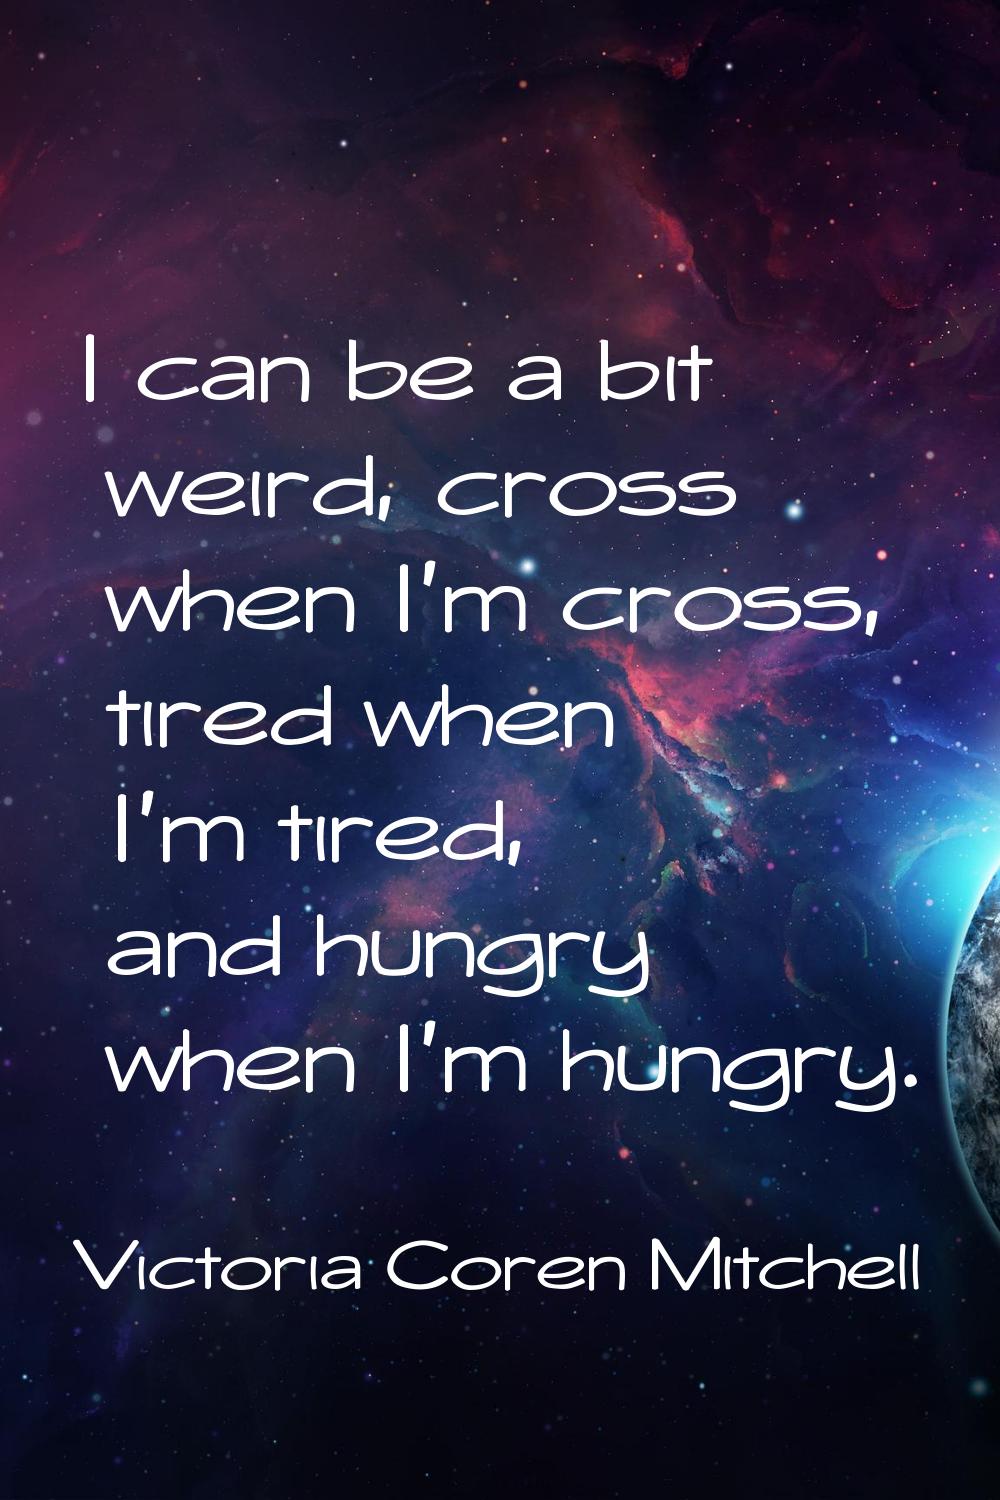 I can be a bit weird, cross when I'm cross, tired when I'm tired, and hungry when I'm hungry.